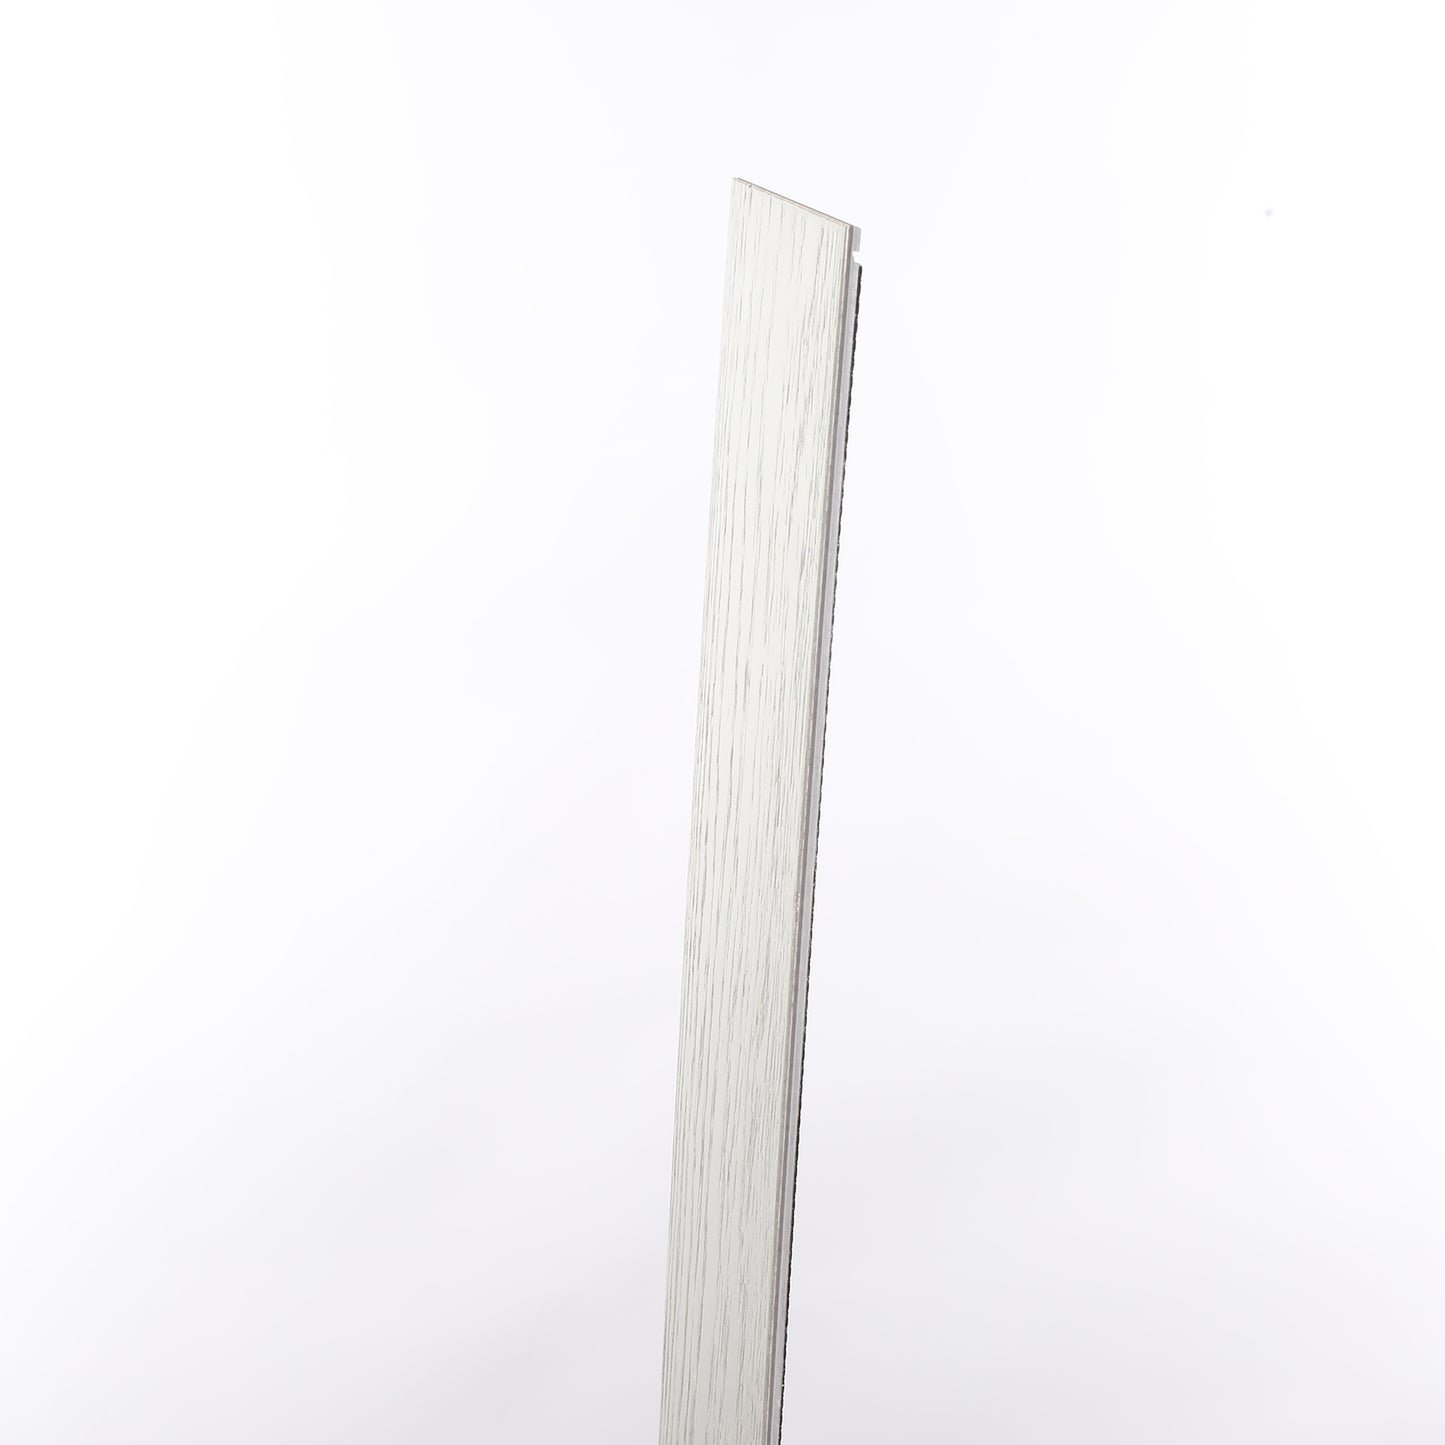 7mm Glenwood Waterproof Engineered Hardwood Flooring 5 in. Wide x Varying Length Long